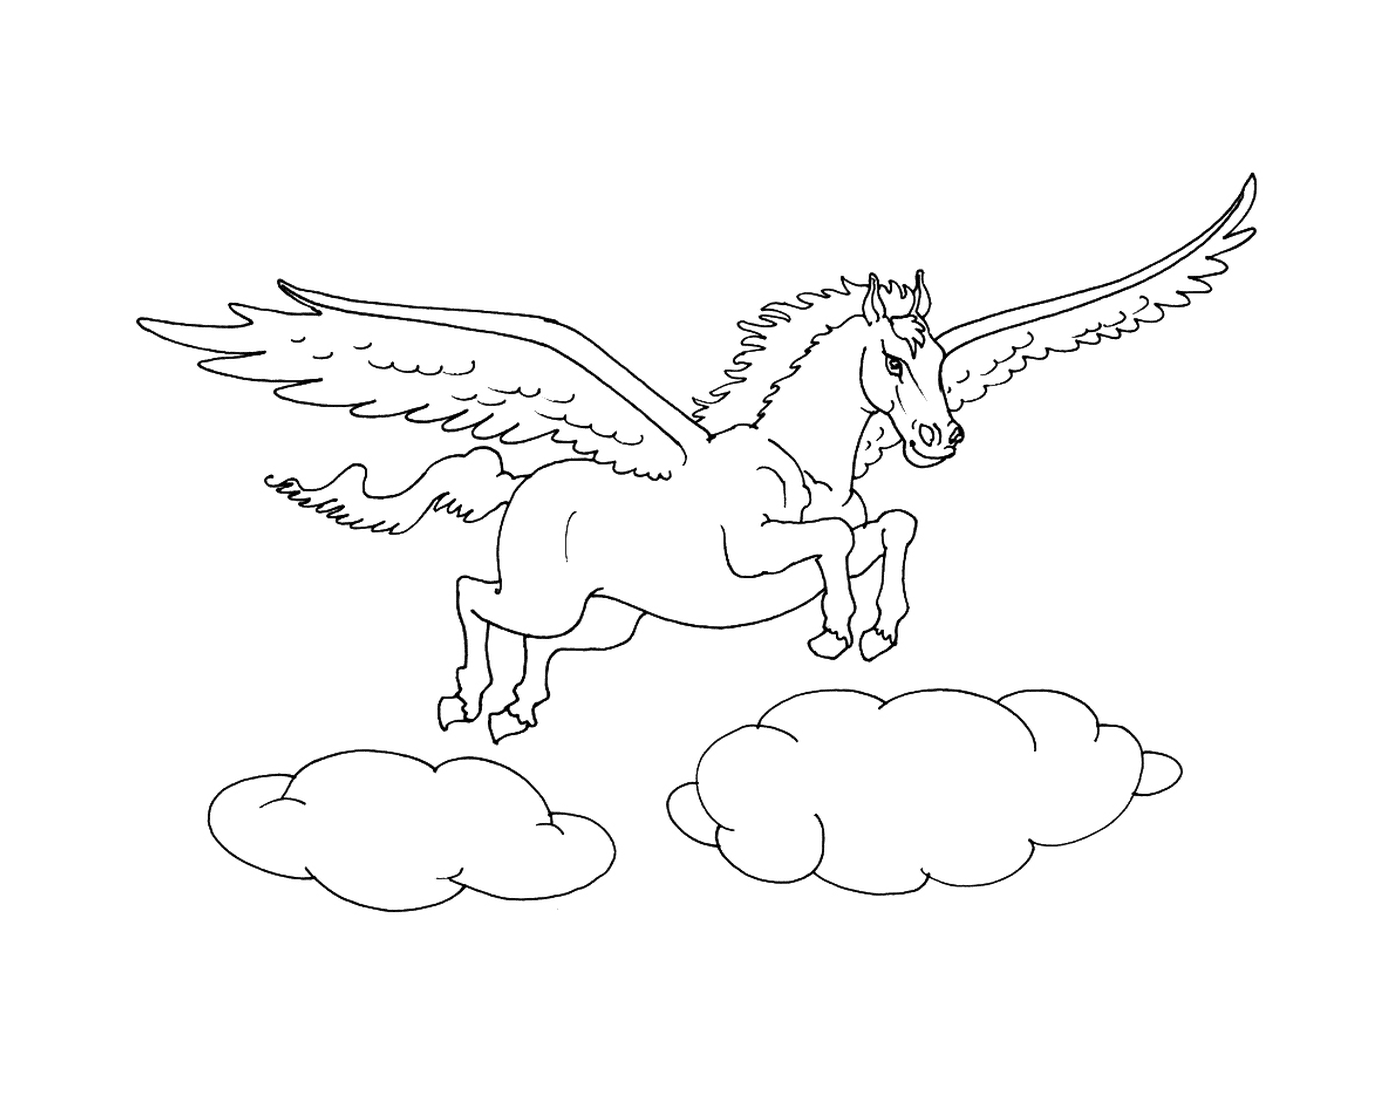  双翼马匹在云上飞翔 